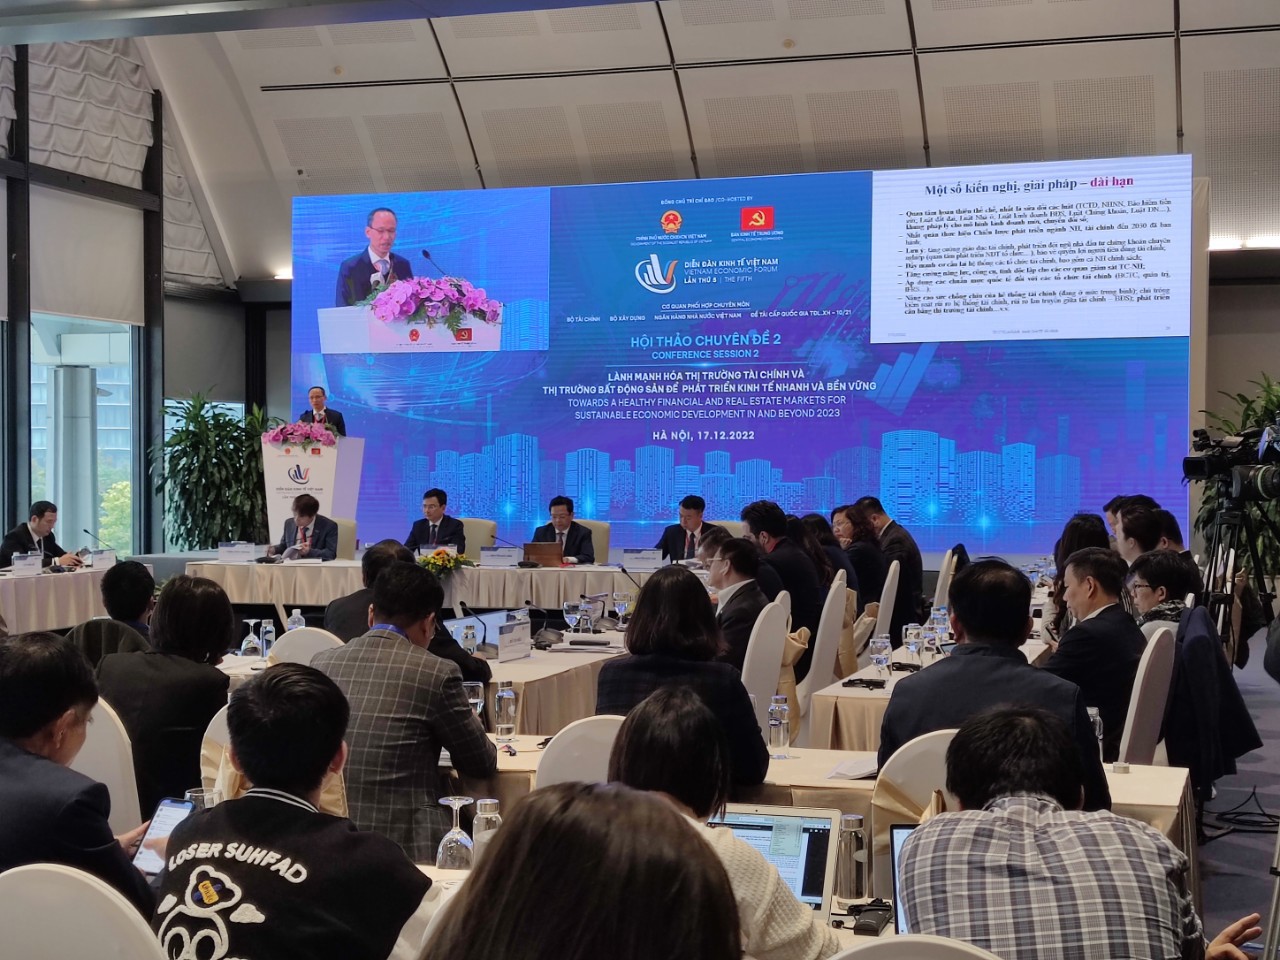 Quang cảnh hội thảo chuyên đề 2 tại Diễn đàn Kinh tế Việt Nam năm 2023, sáng 17/12.